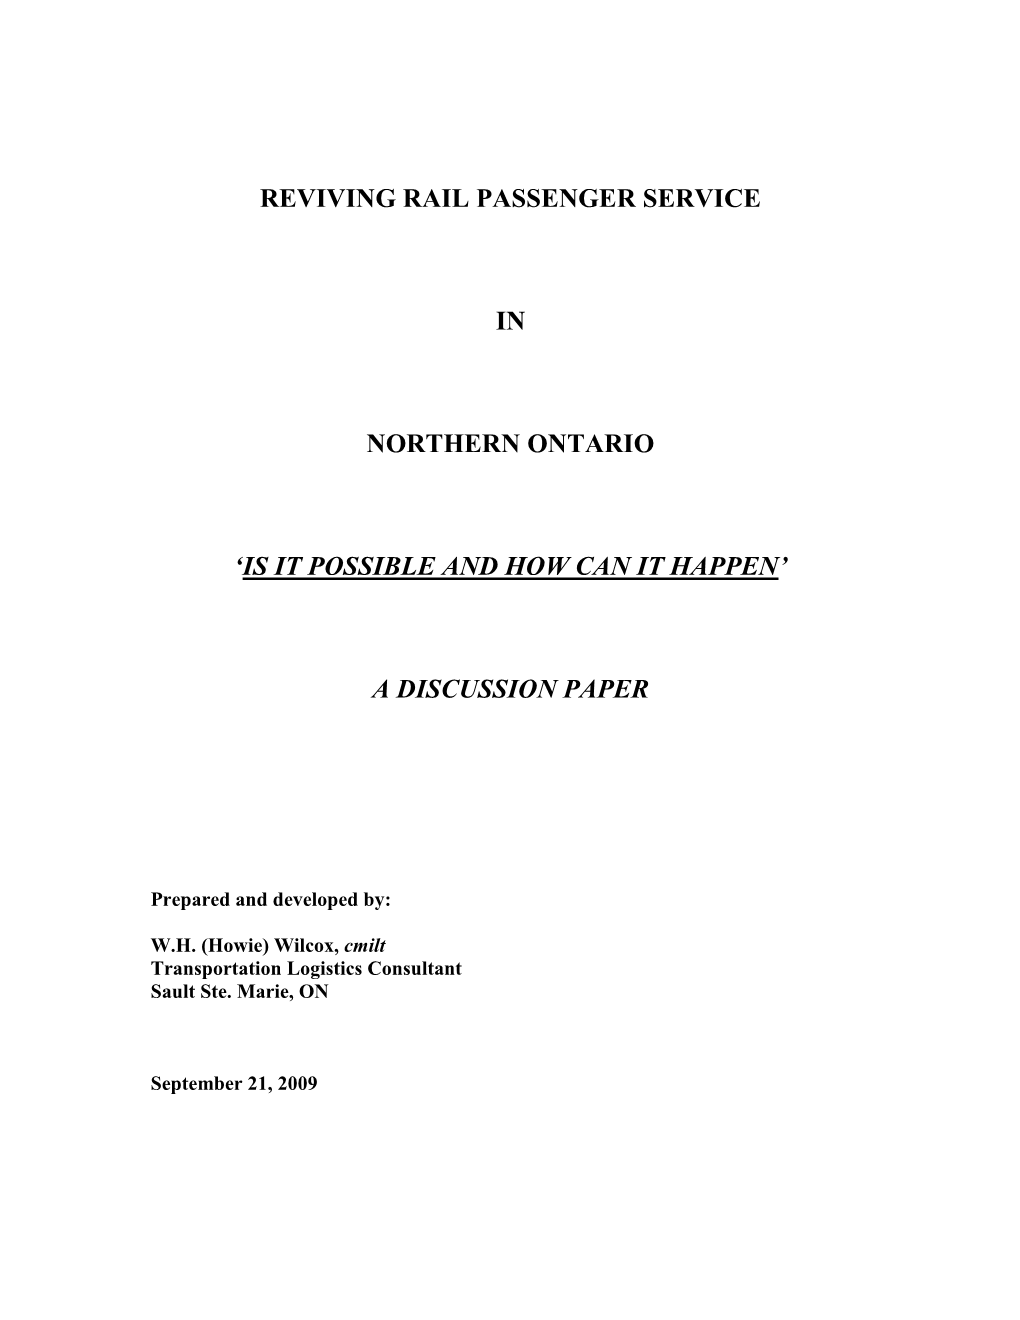 Revitalization of Rail Passenger Service